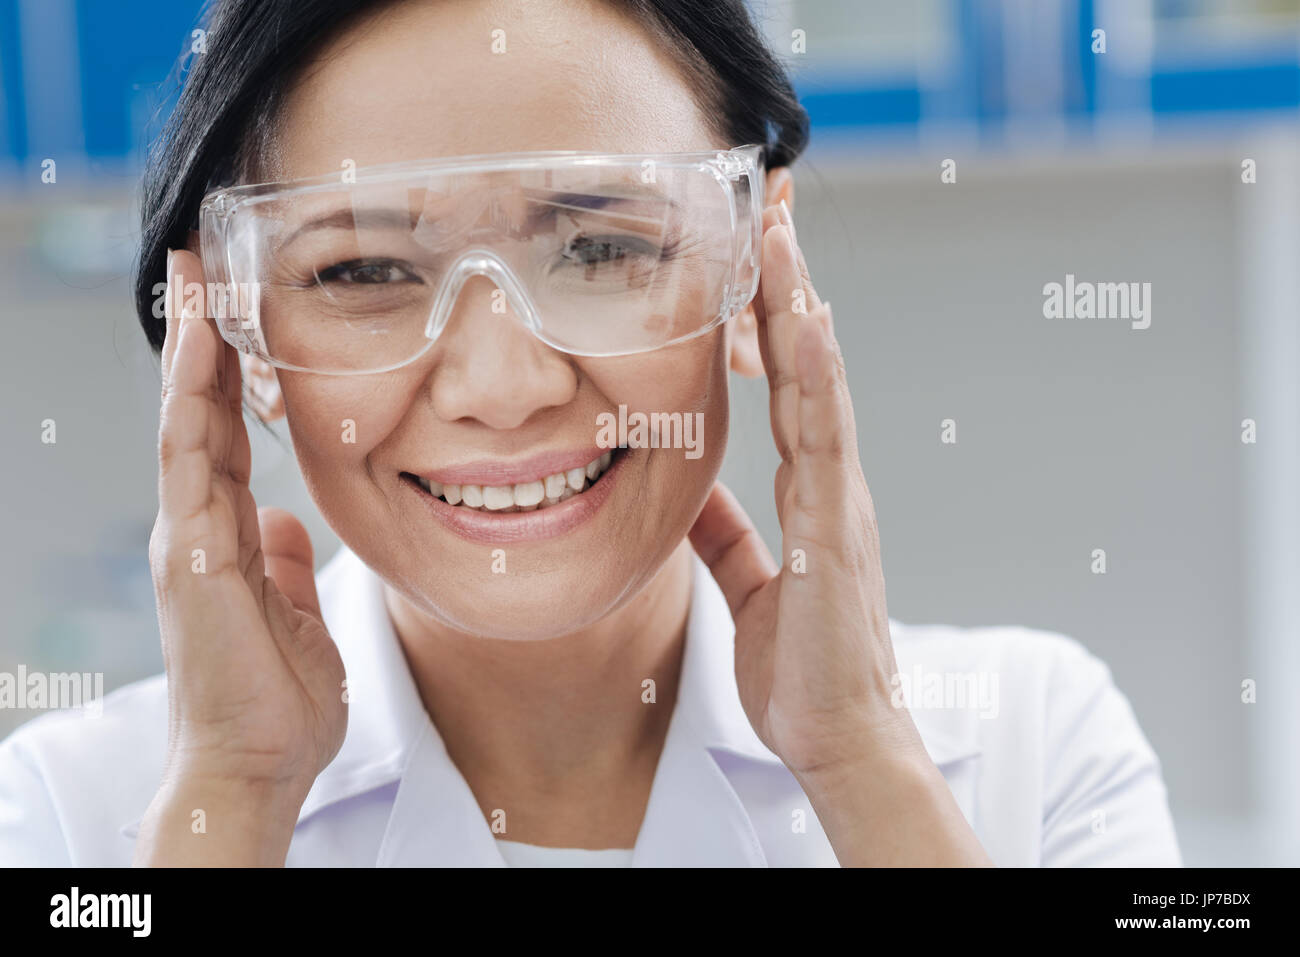 Chercheur en laboratoire ravi sa fixation lunettes de protection Banque D'Images